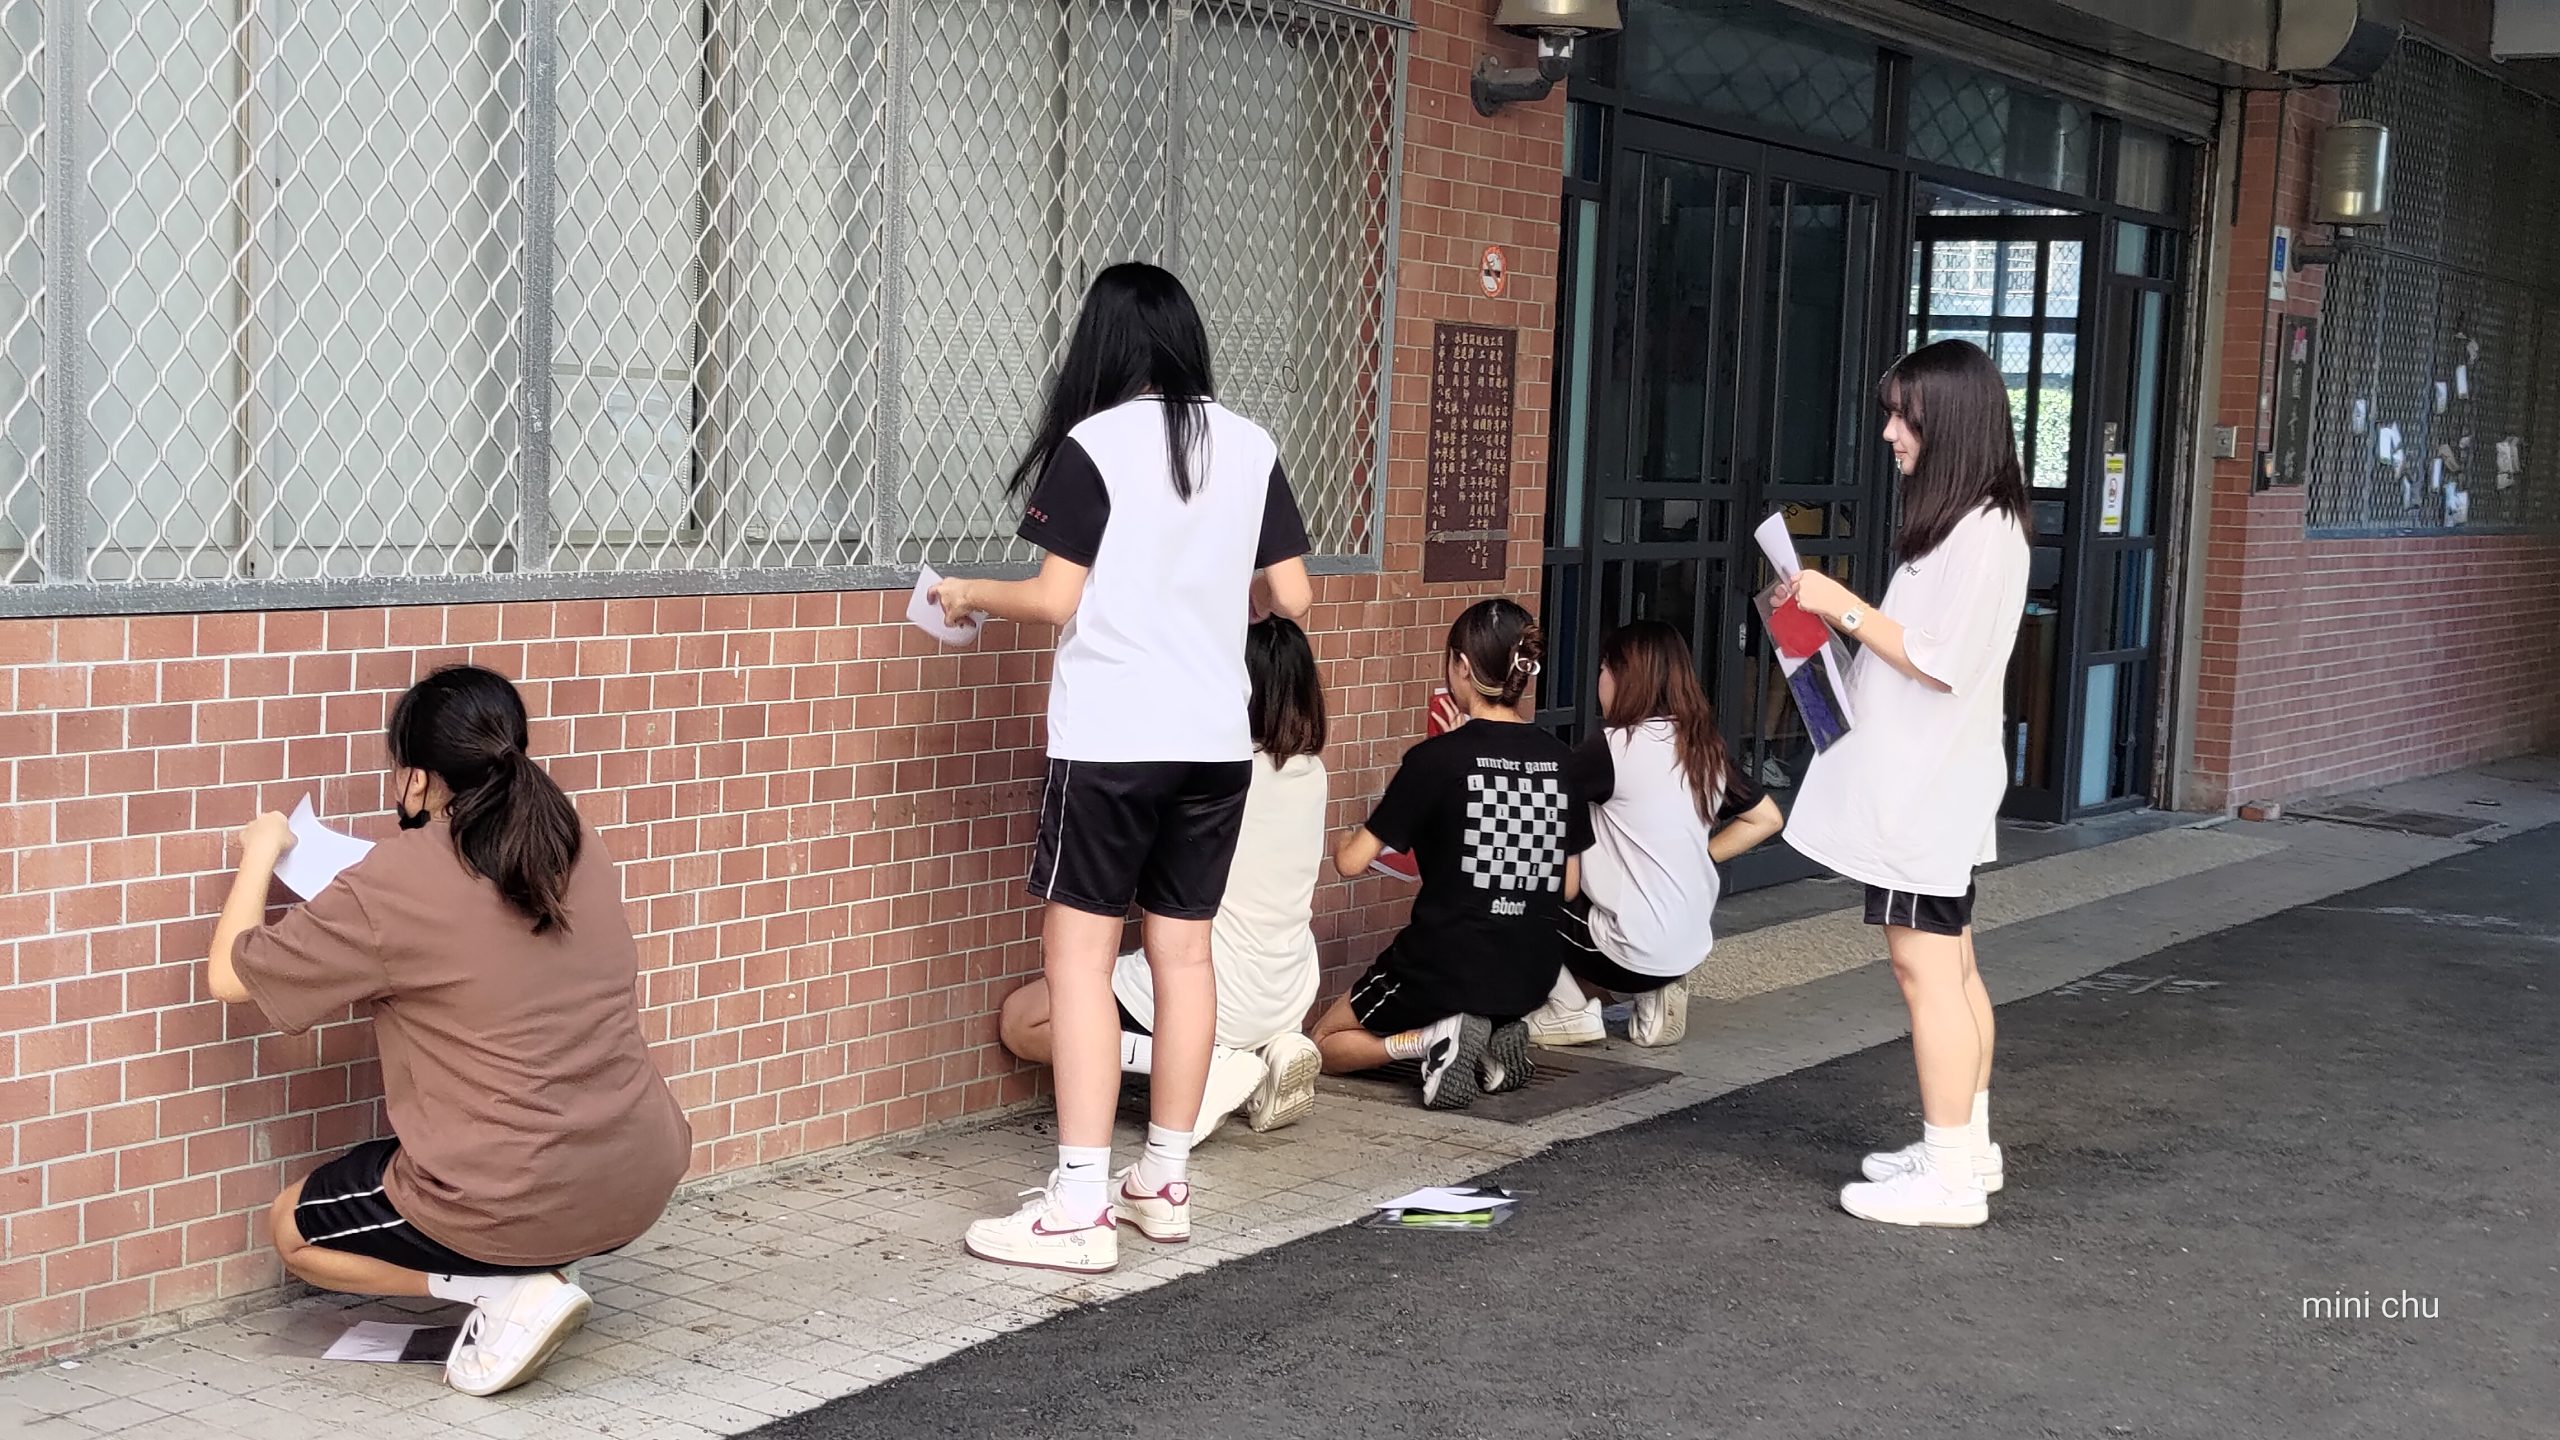 112學年度第一學期於臺中市立豐原高級中等學校施辦質感採集課程實作紀錄系列照片共20張